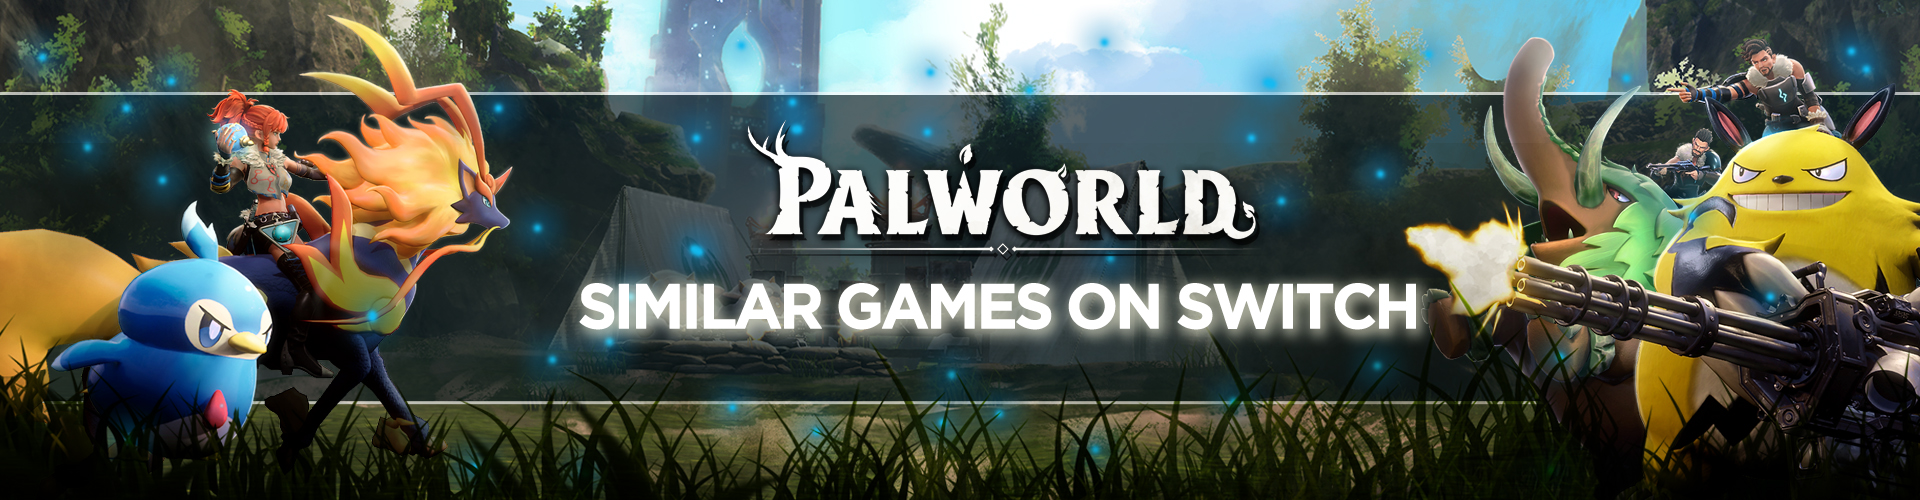 Die Top Spiele Wie Palworld auf Switch